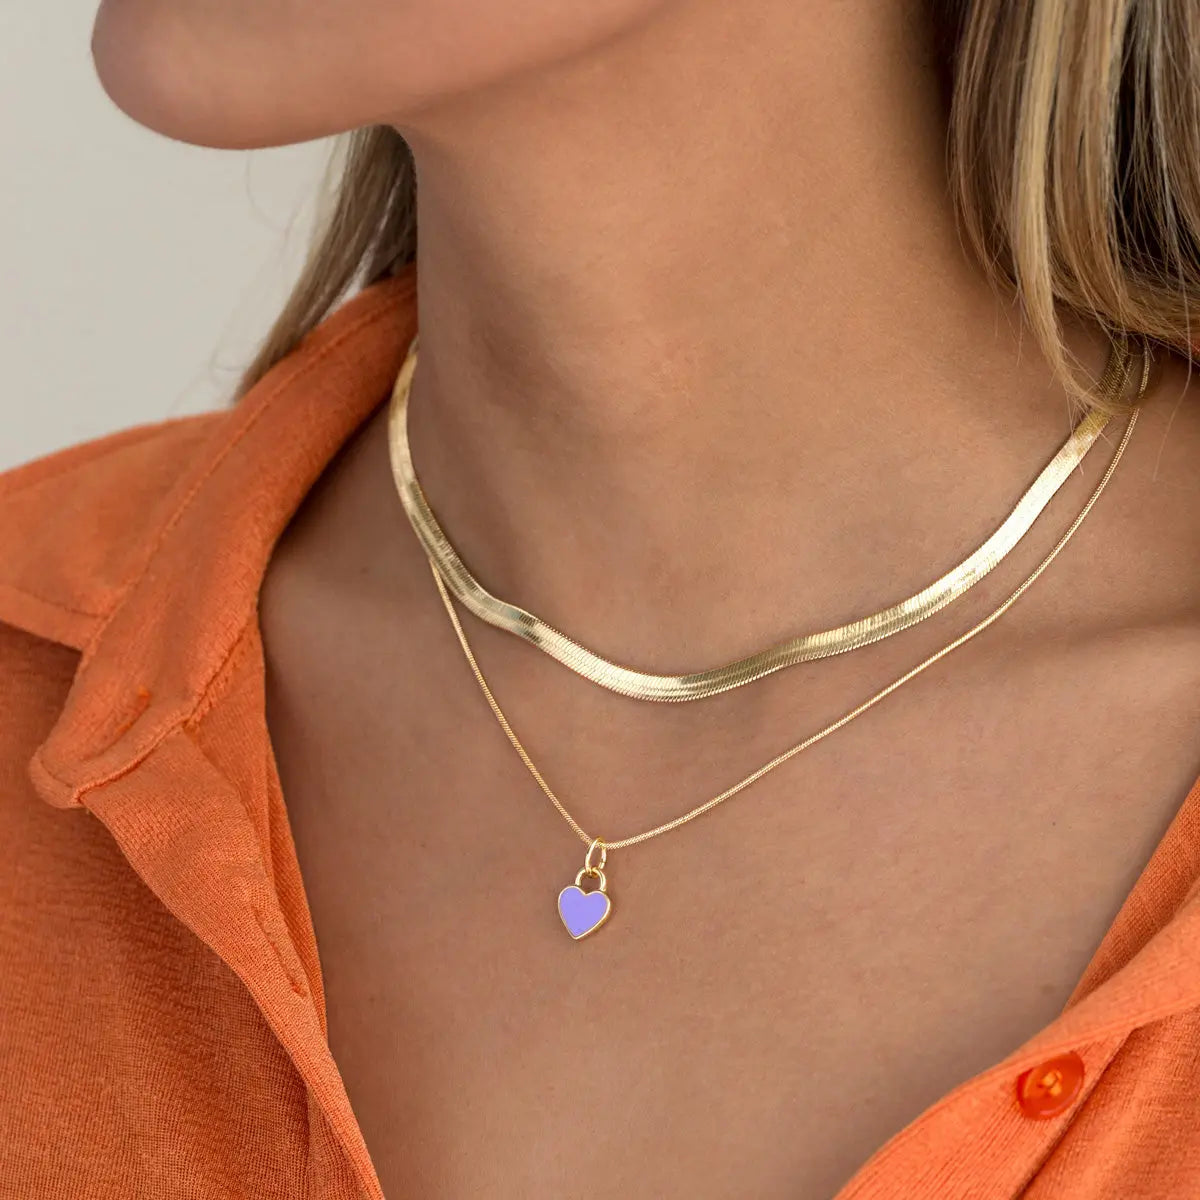 Purple Enamel Heart Necklace